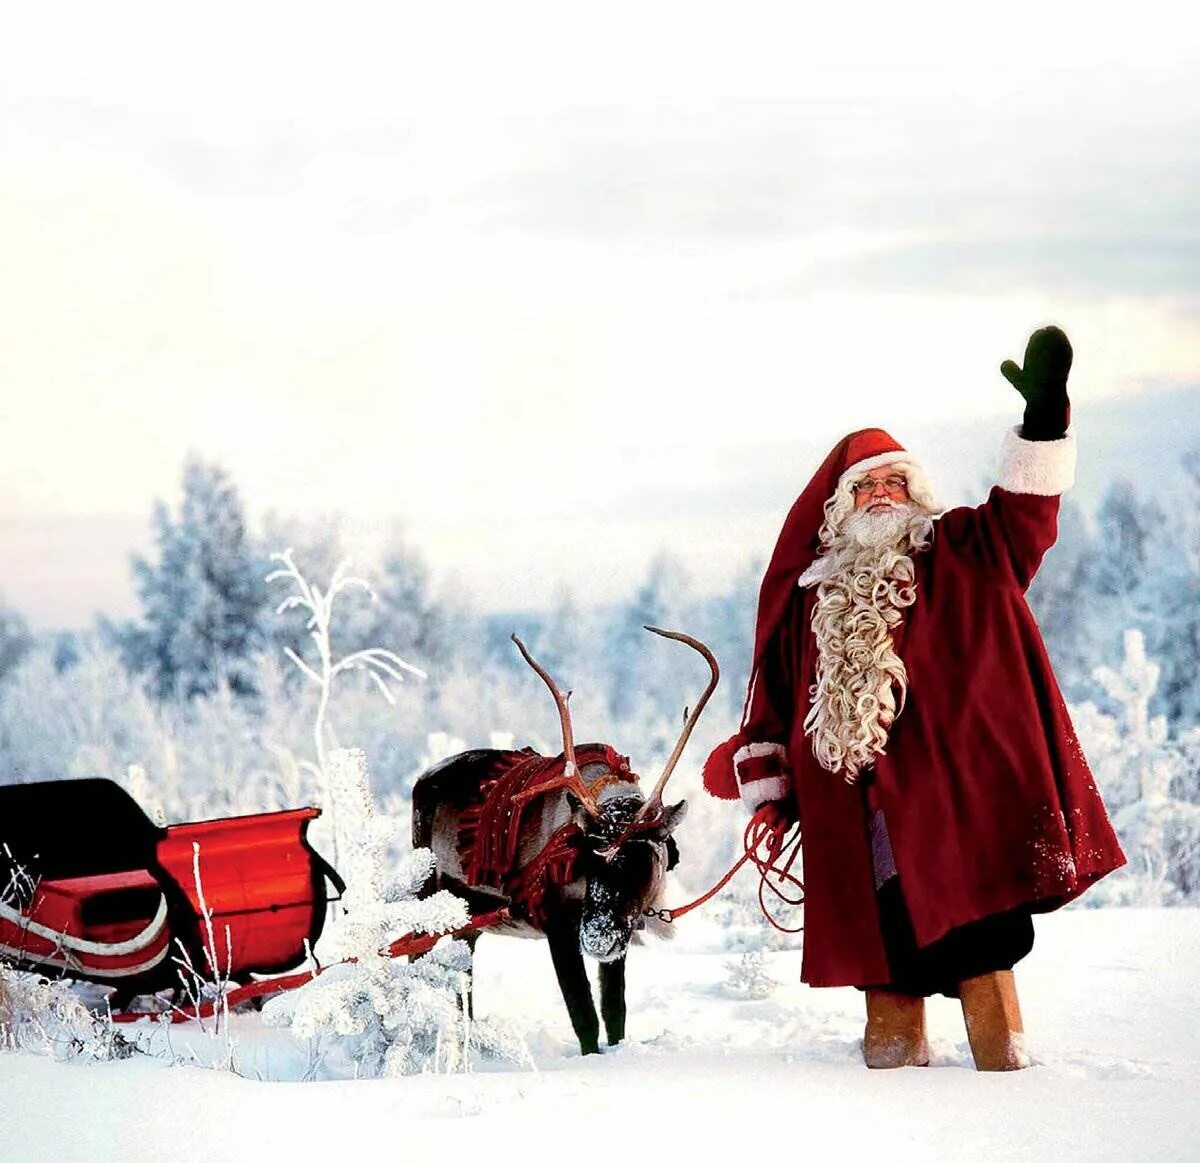 Финский дед Мороз йоулупукки. Дед Мороз в Финляндии йоулупукки. Финляндия финский дед Мороз йоулупукки.